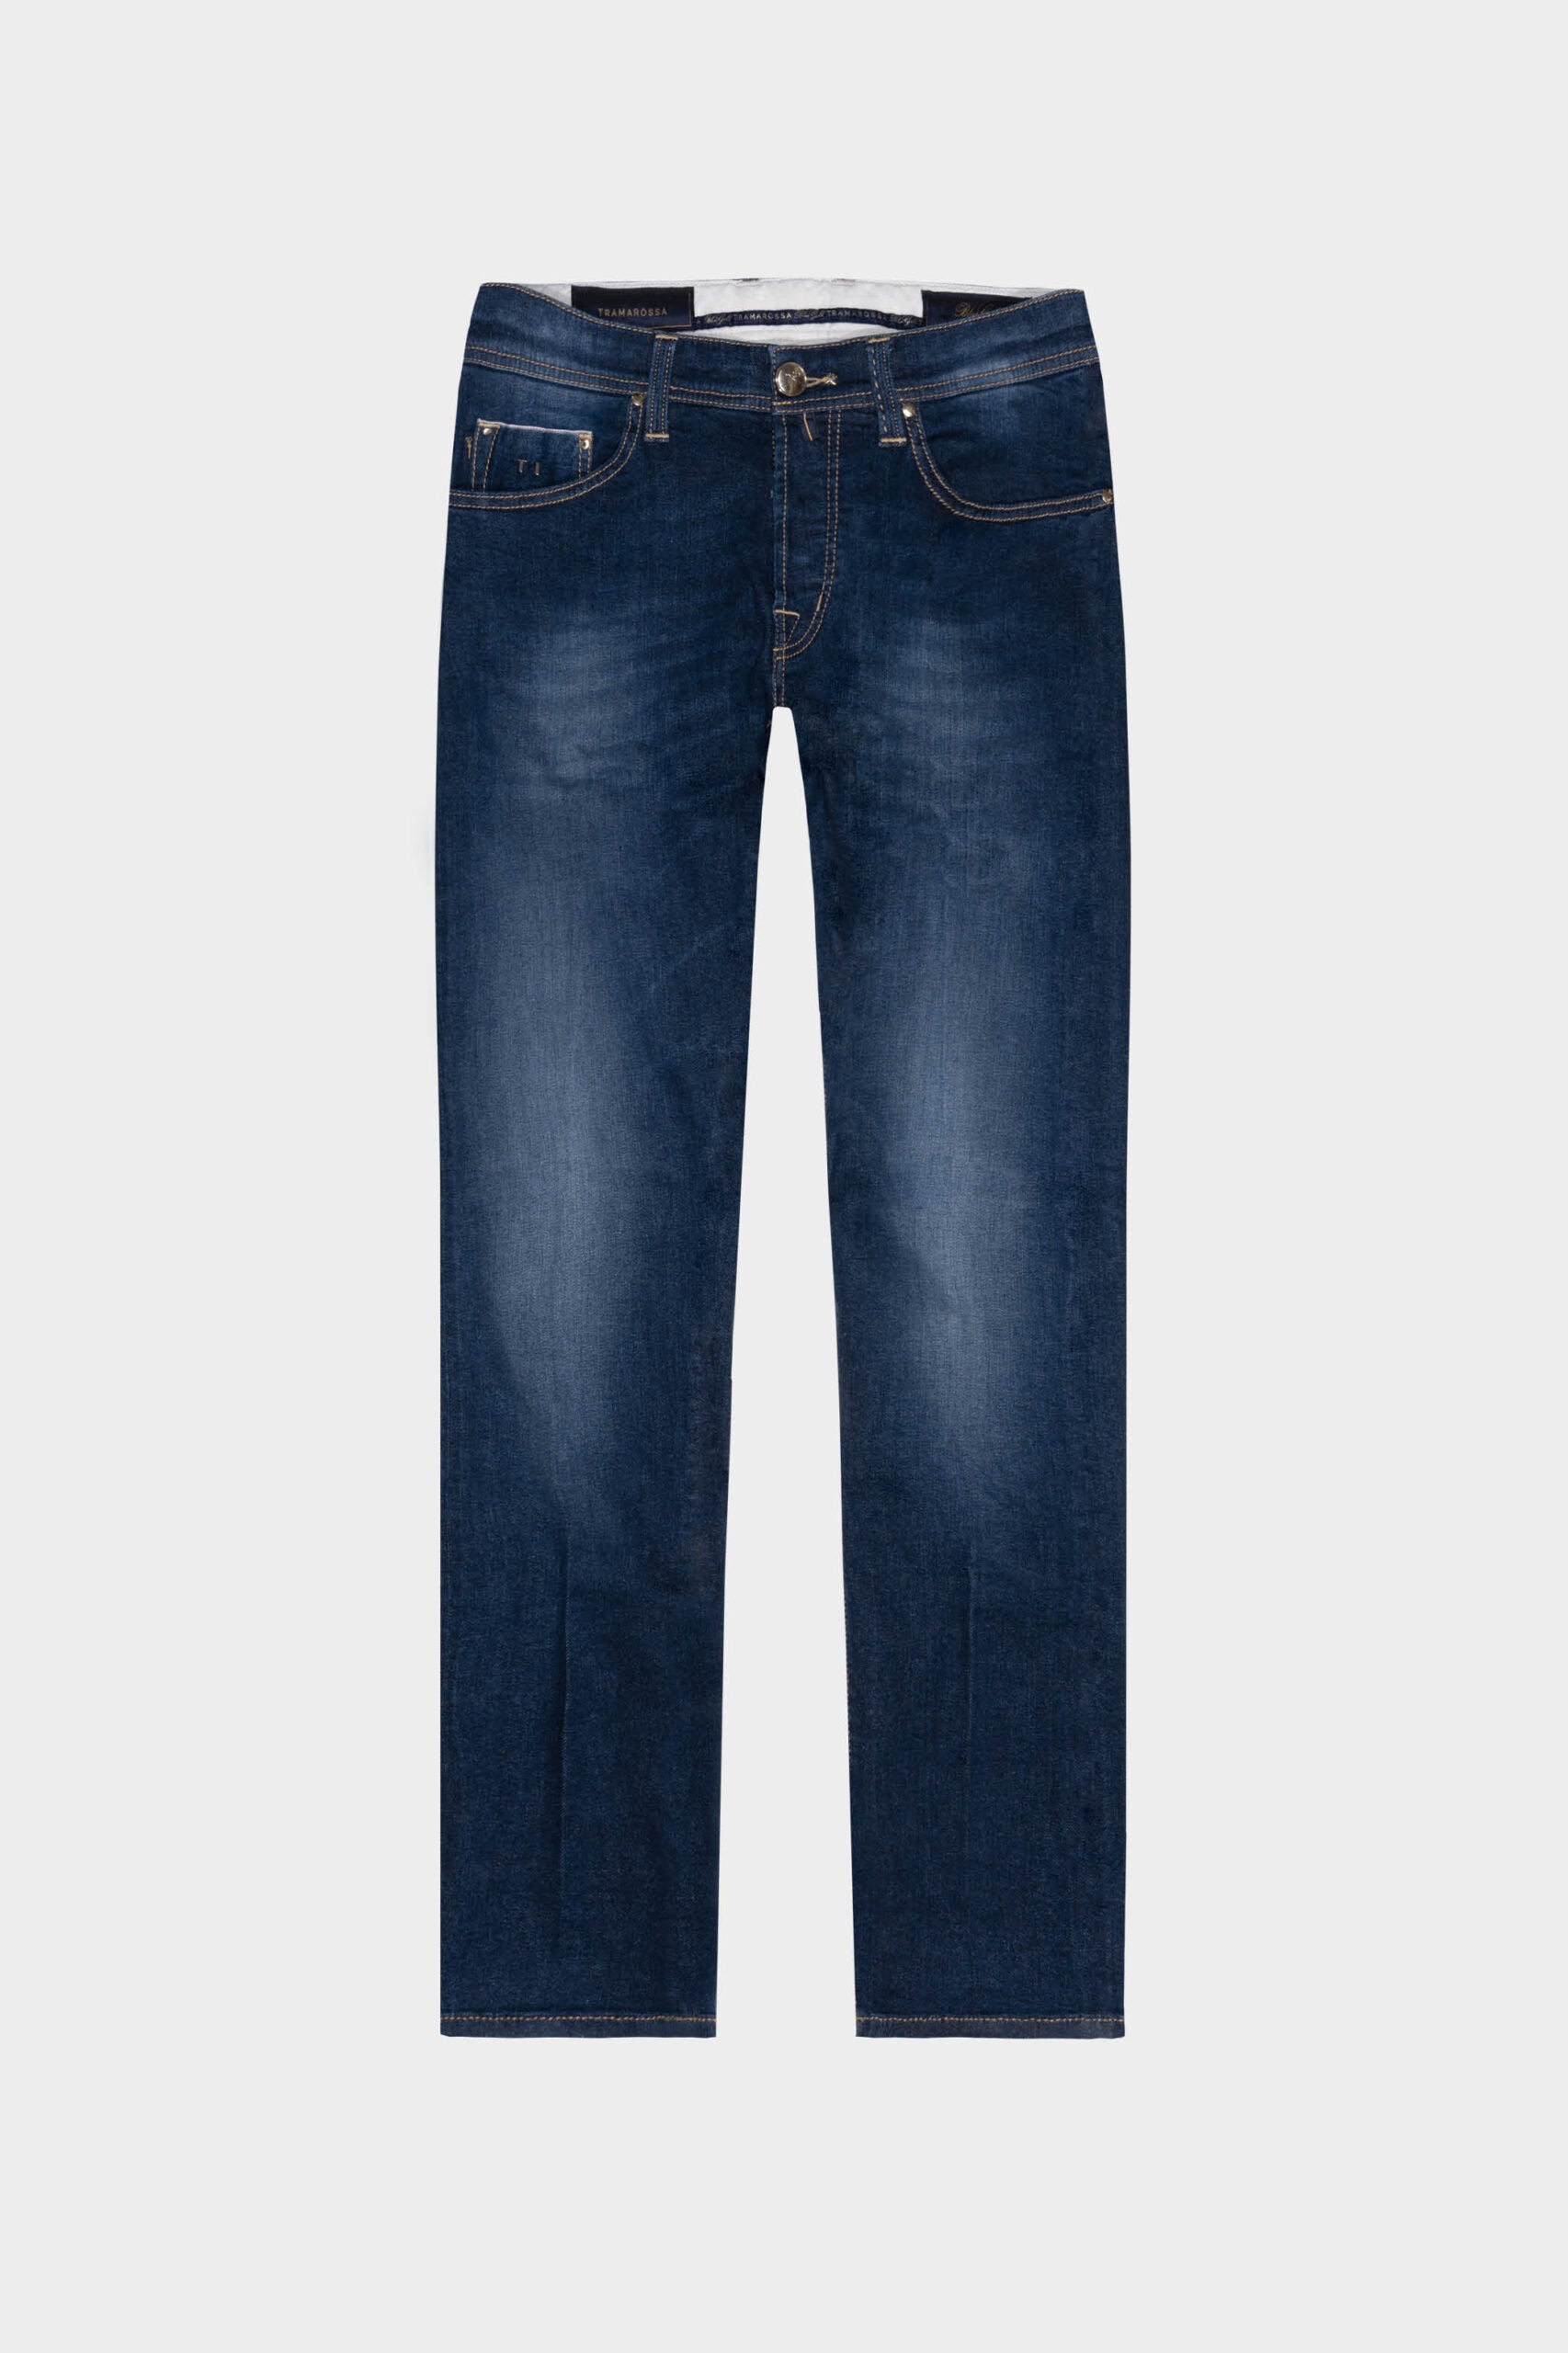 Tramarossa 5 Pocket Jeans - Jeans